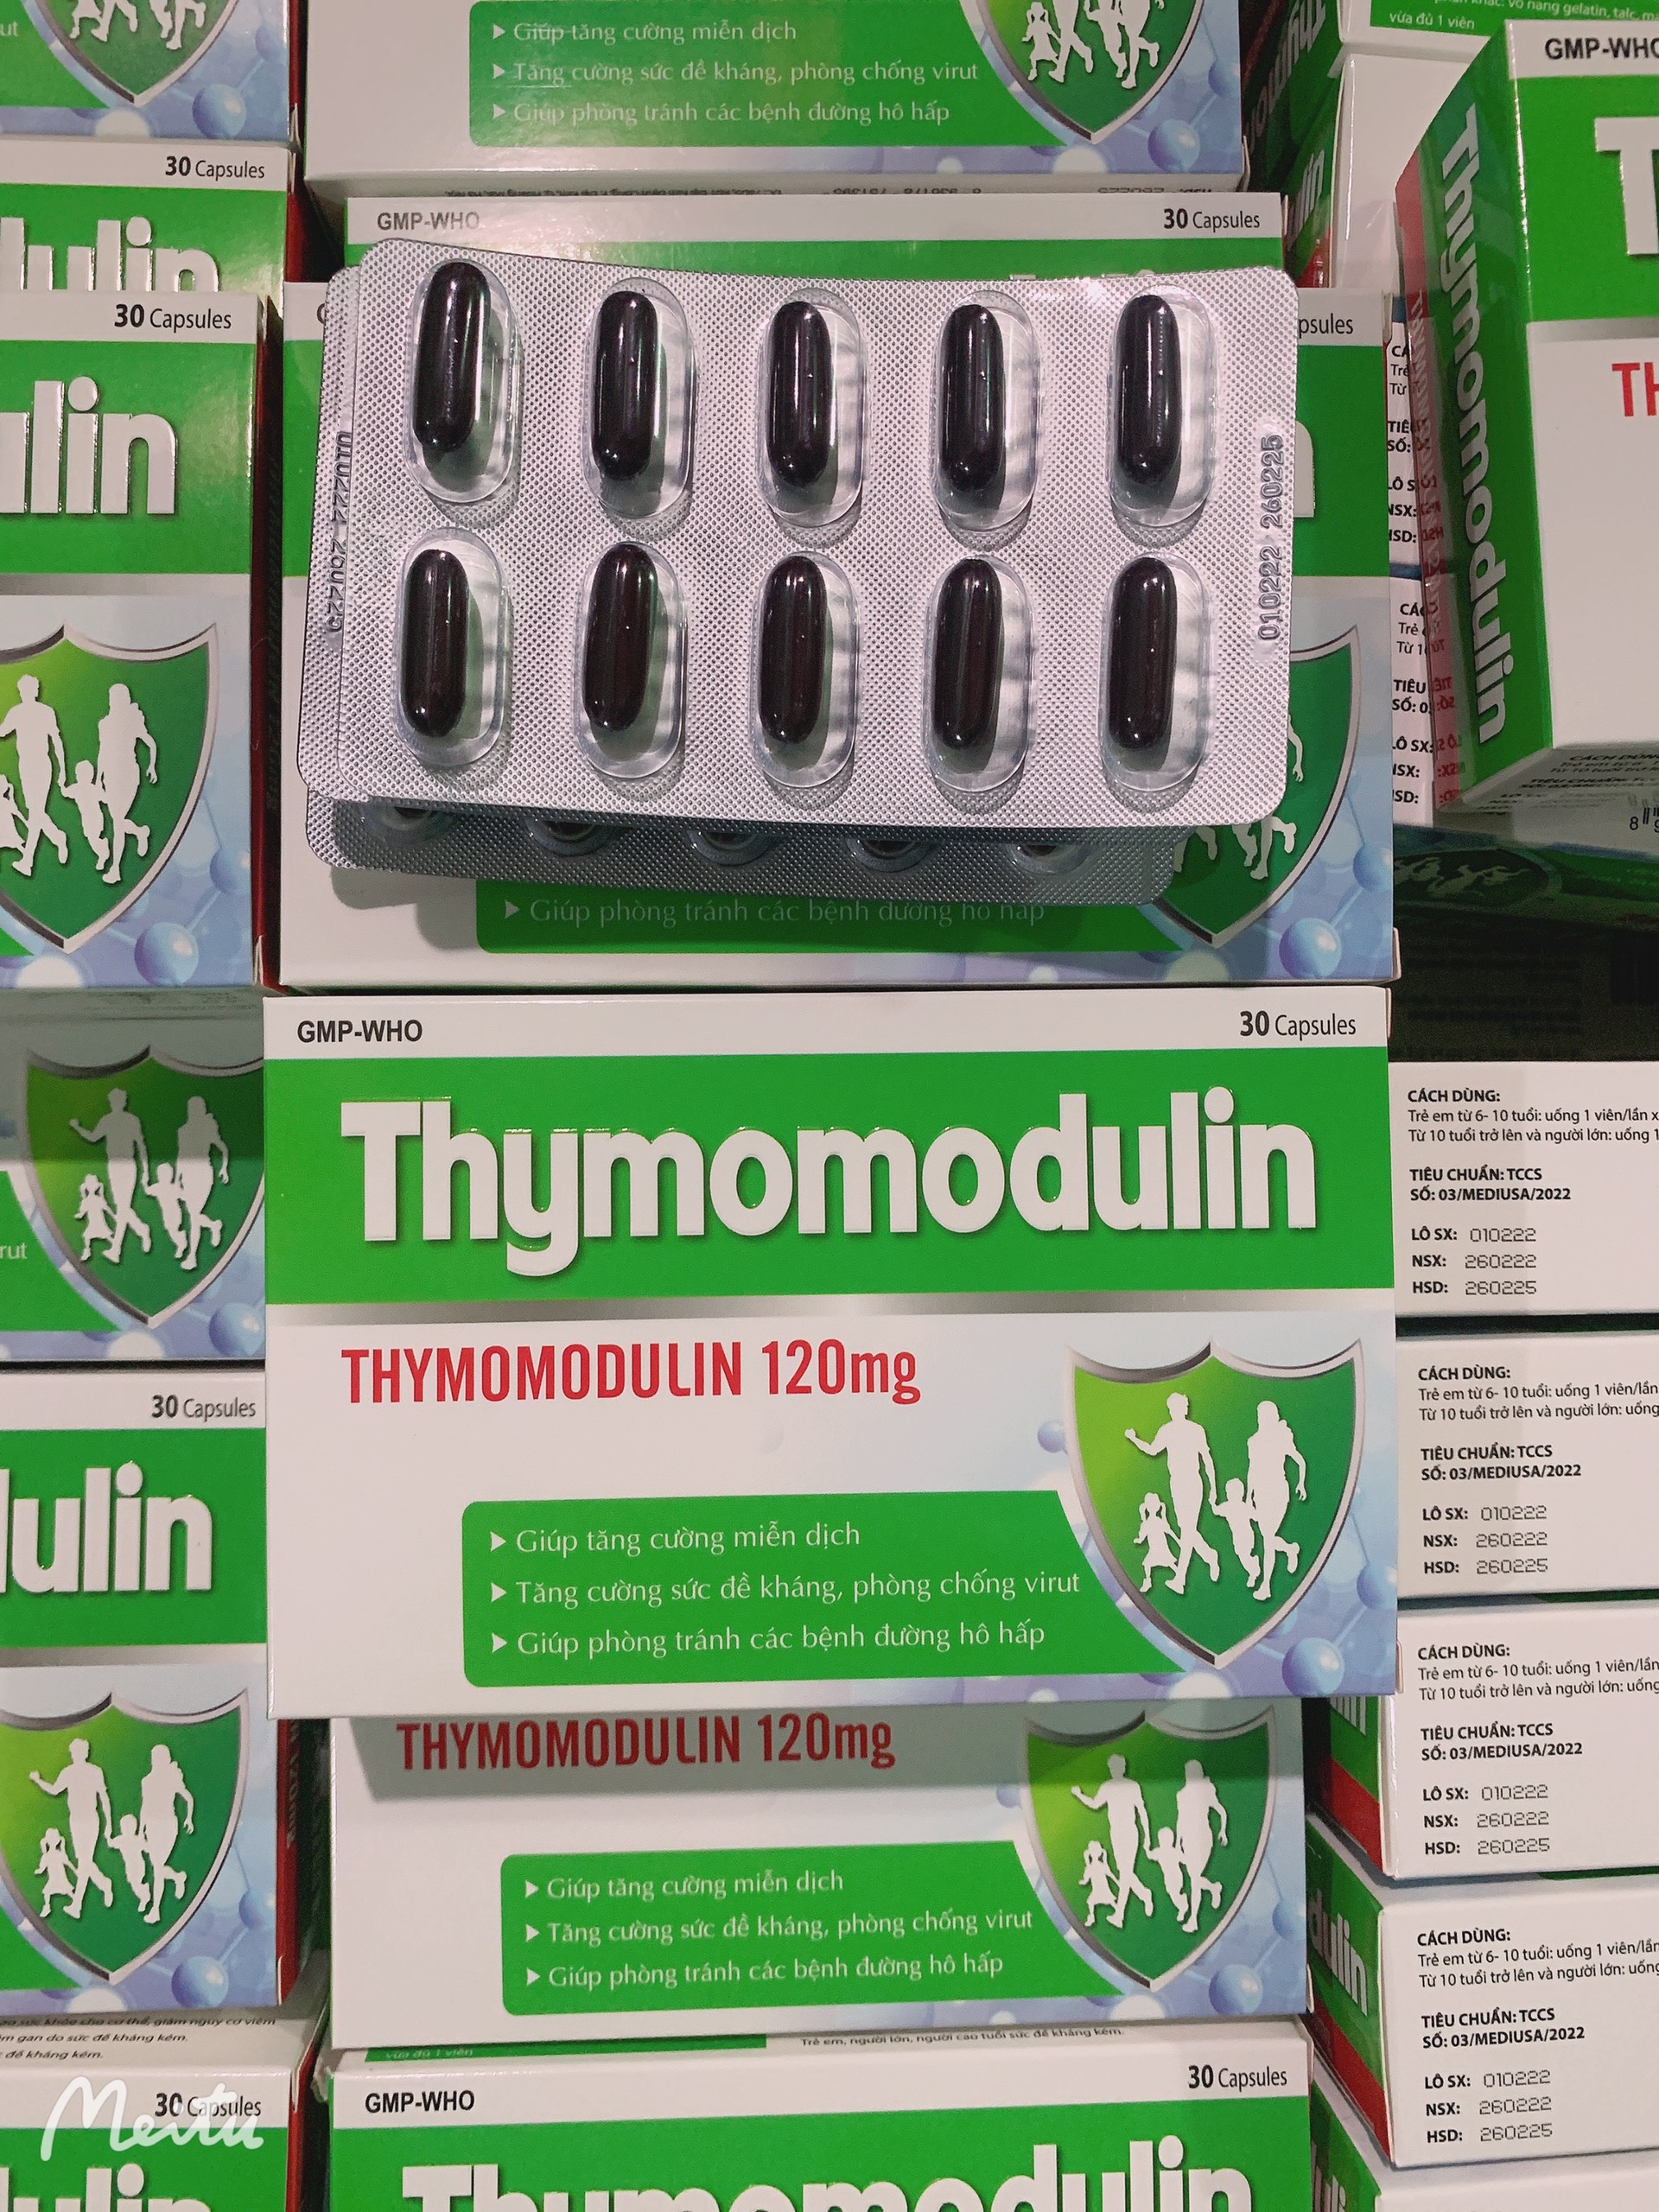 Thymomodulin 120mg-Hỗ trợ tăng cường miễn dịch, sức đề kháng